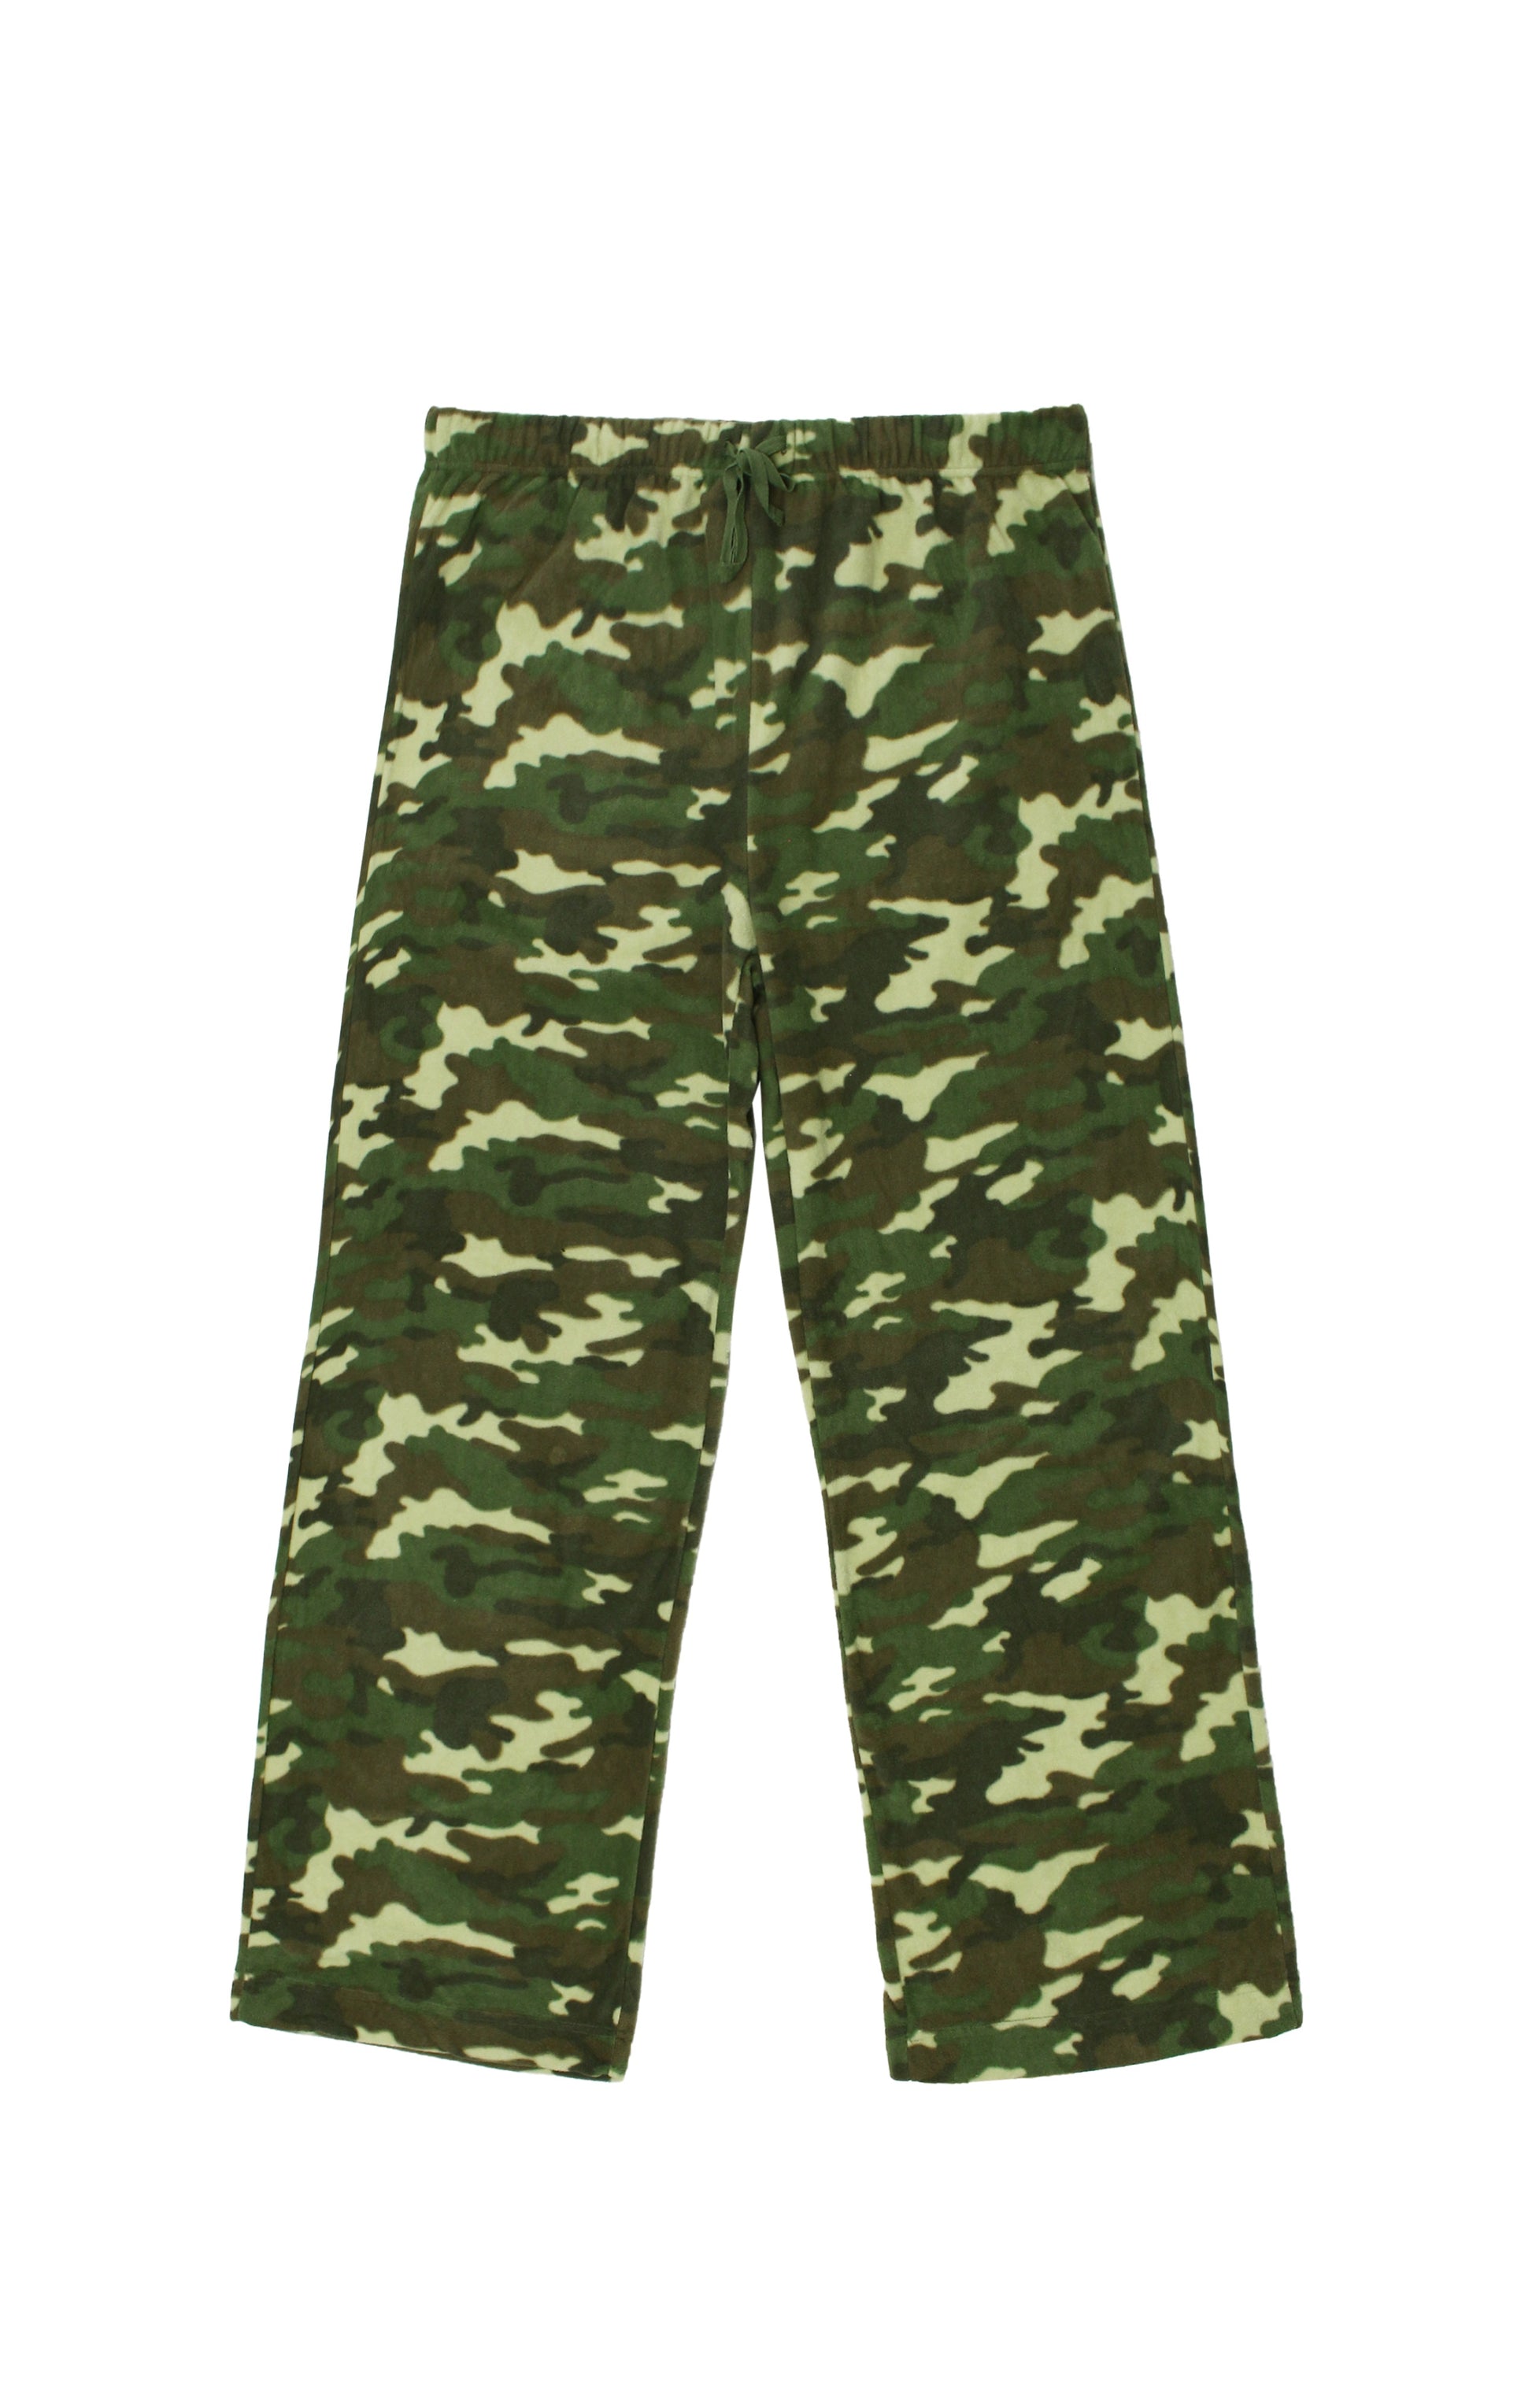 Great Northern Men's Camouflage Fleece Pants